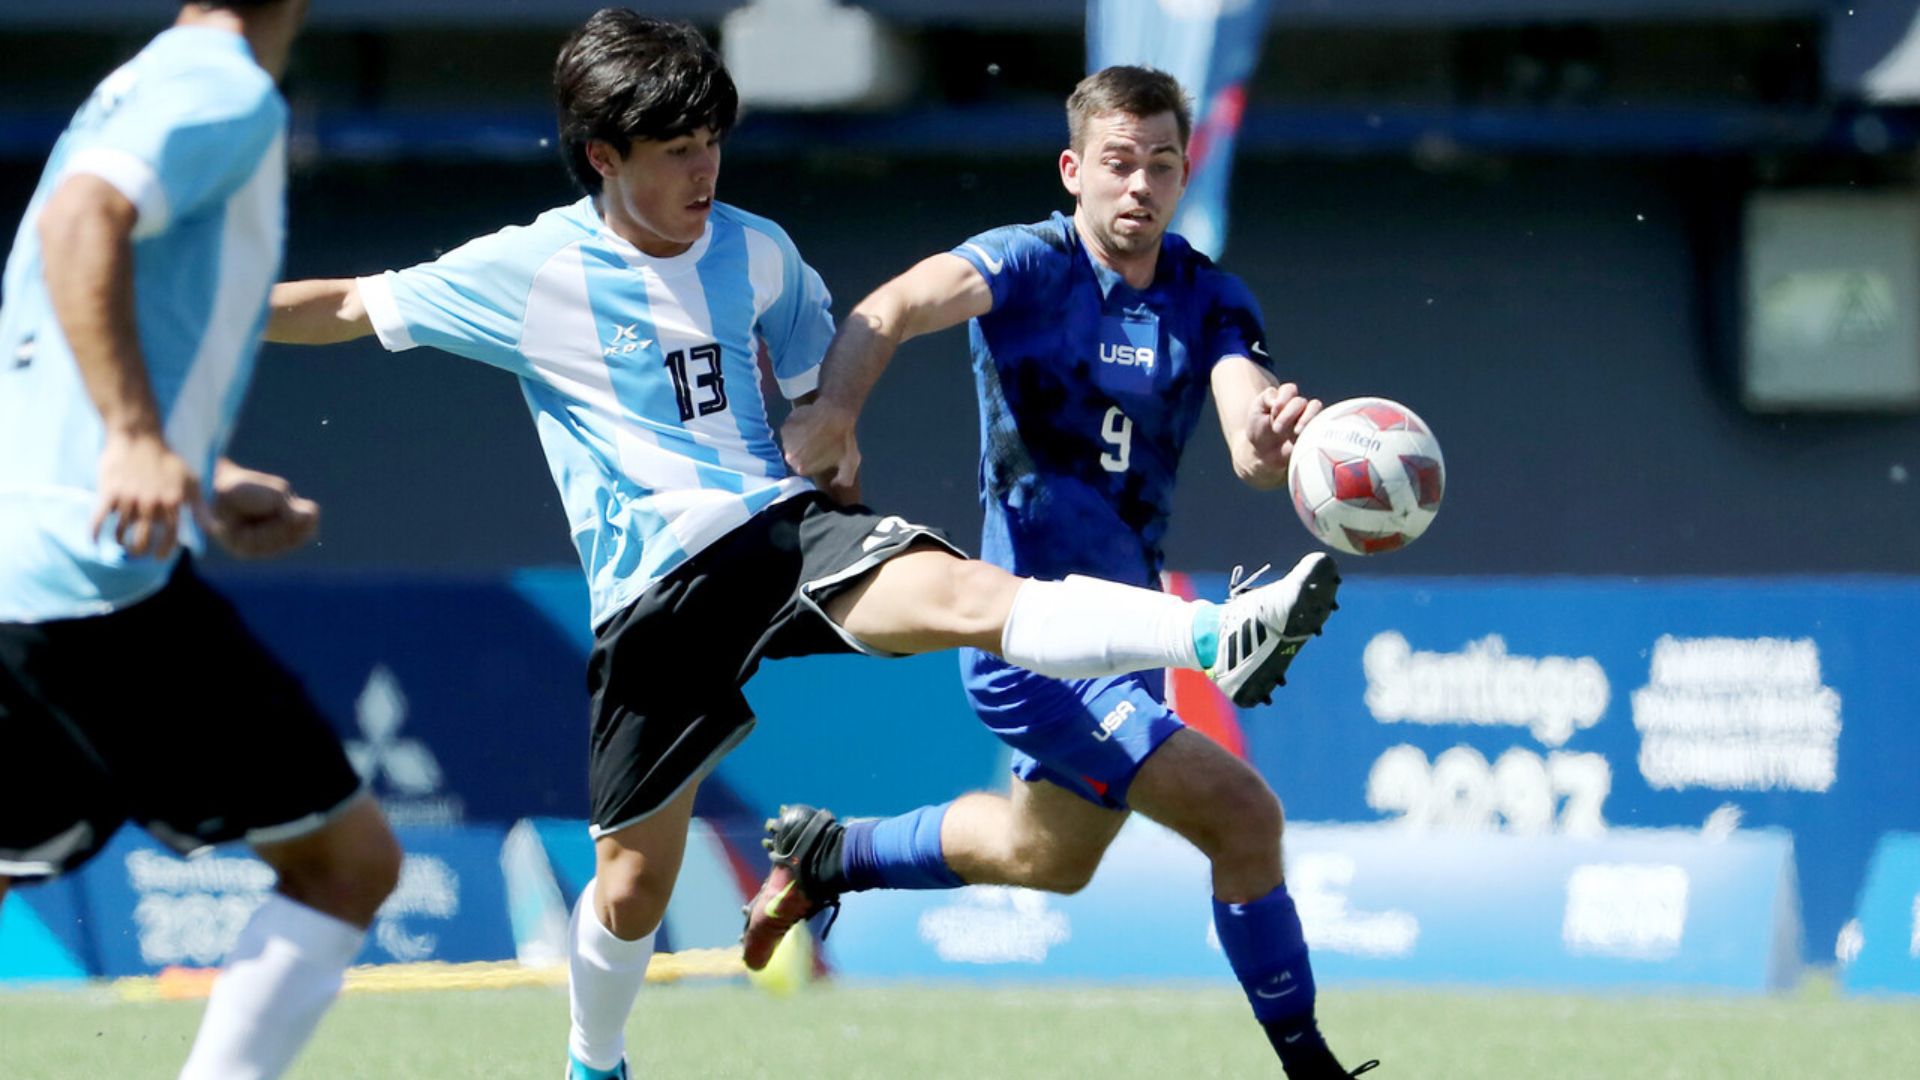 Futbol PC: Argentina logra su primer triunfo y le quita el invicto a EE.UU.